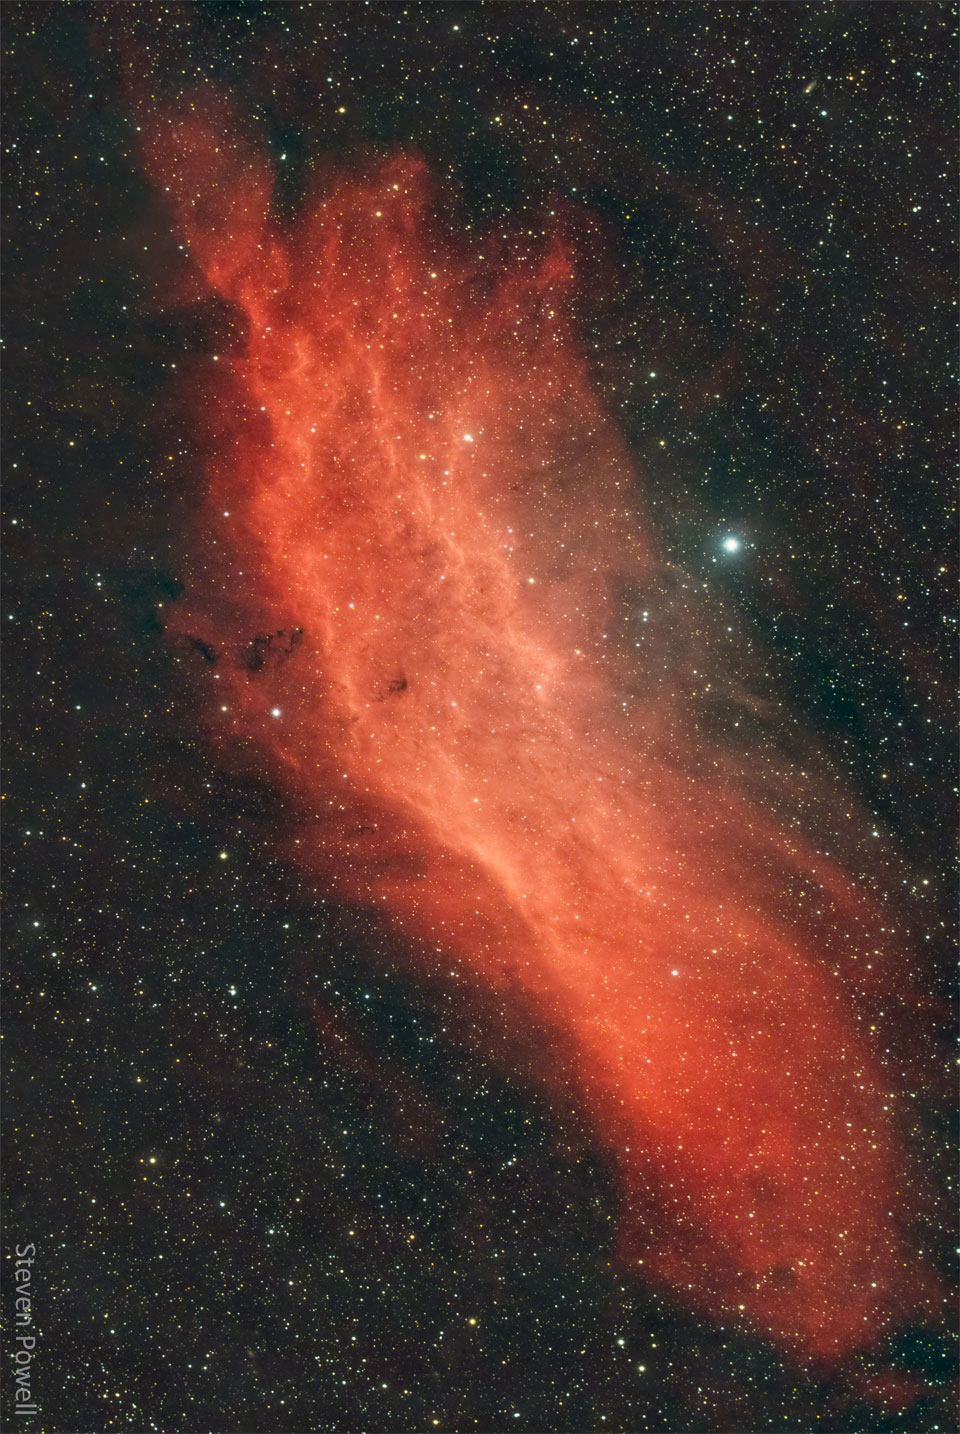 一个红色的气态星云显示在黑暗的星场前面。星云的形状类似于美国的加州。有关更多详细信息，请参阅说明。